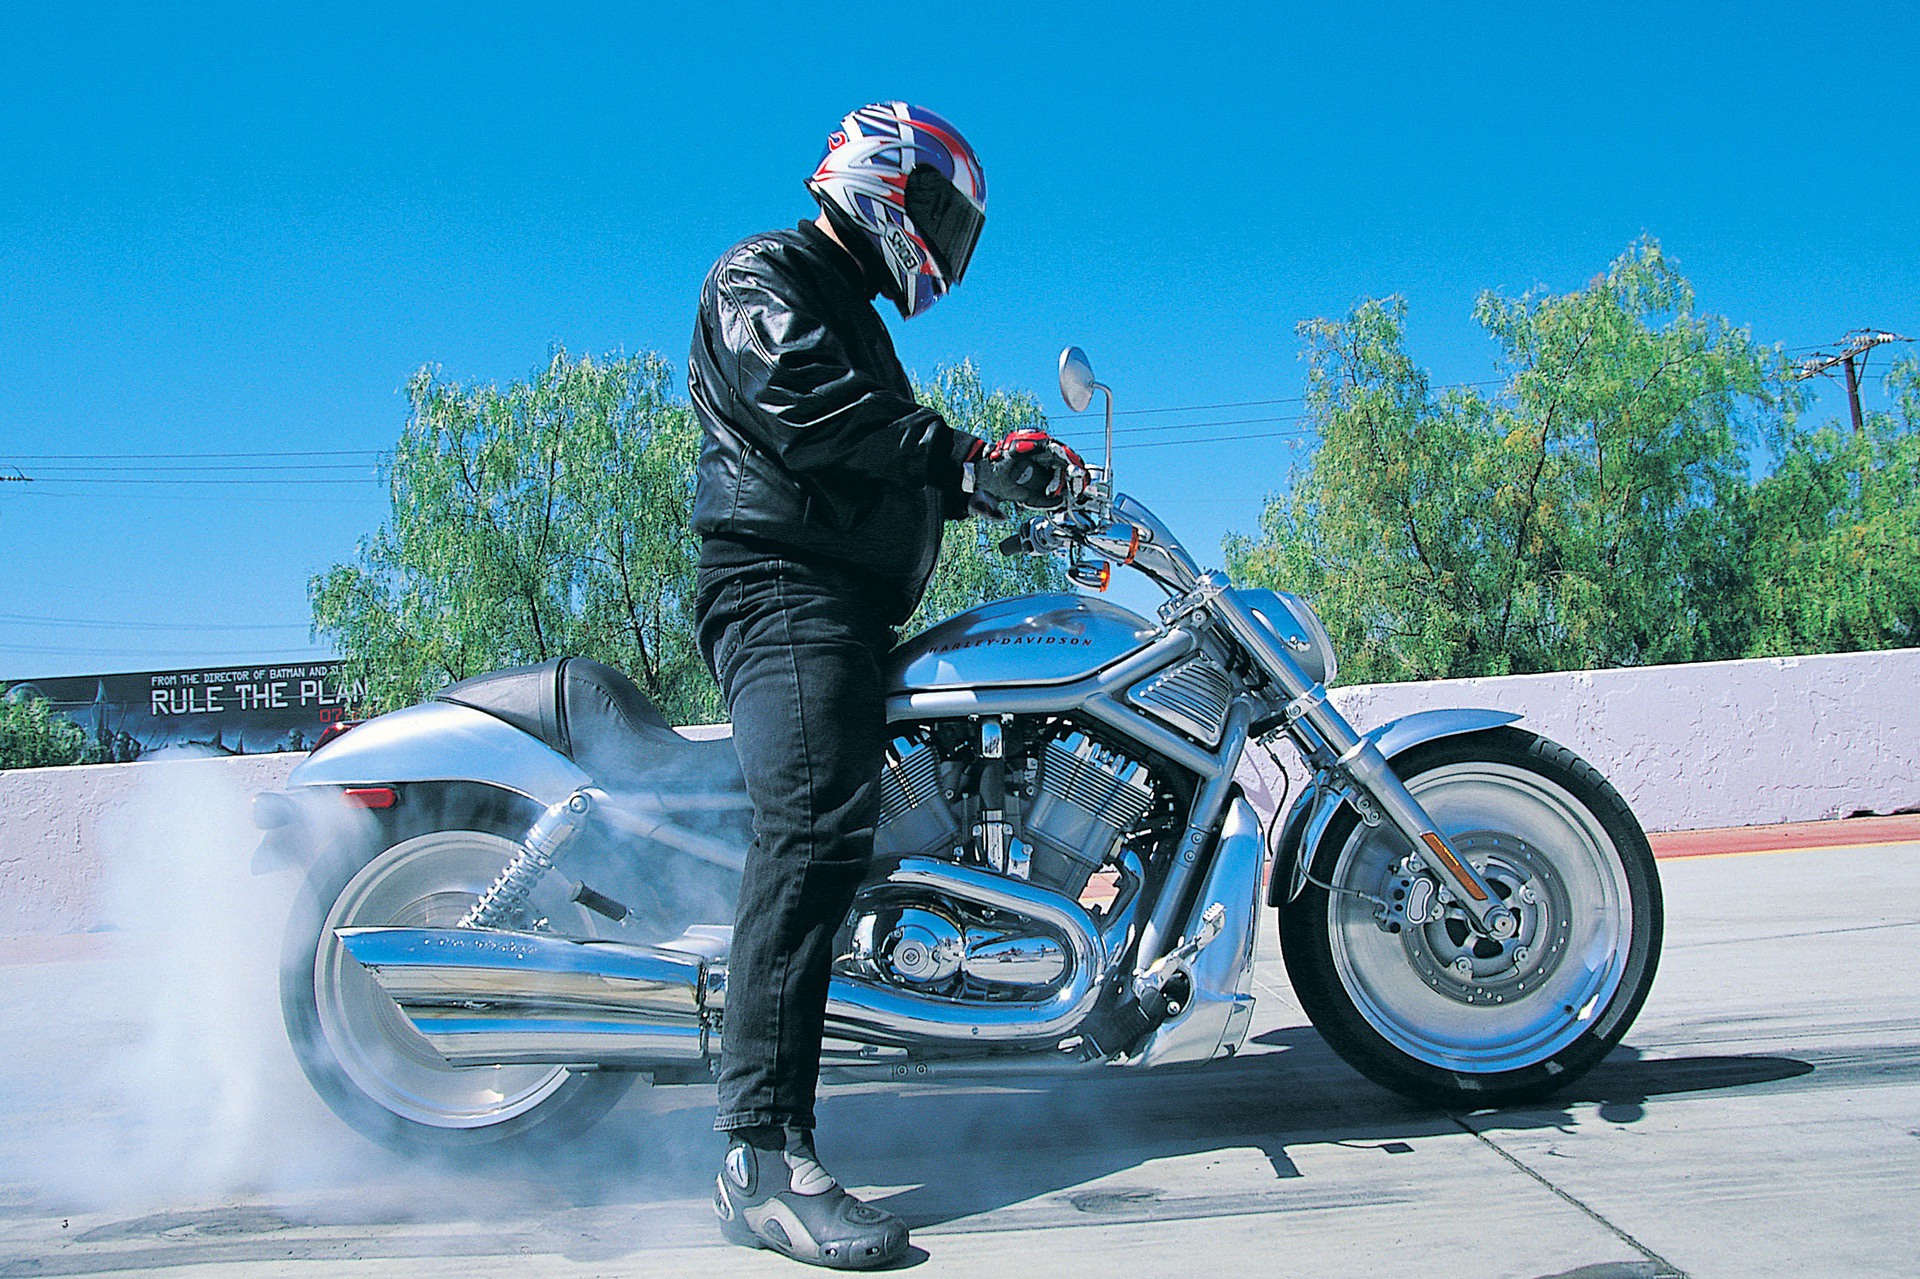 2002 Harley Davidson VRSCA V-Rod doing a burnout